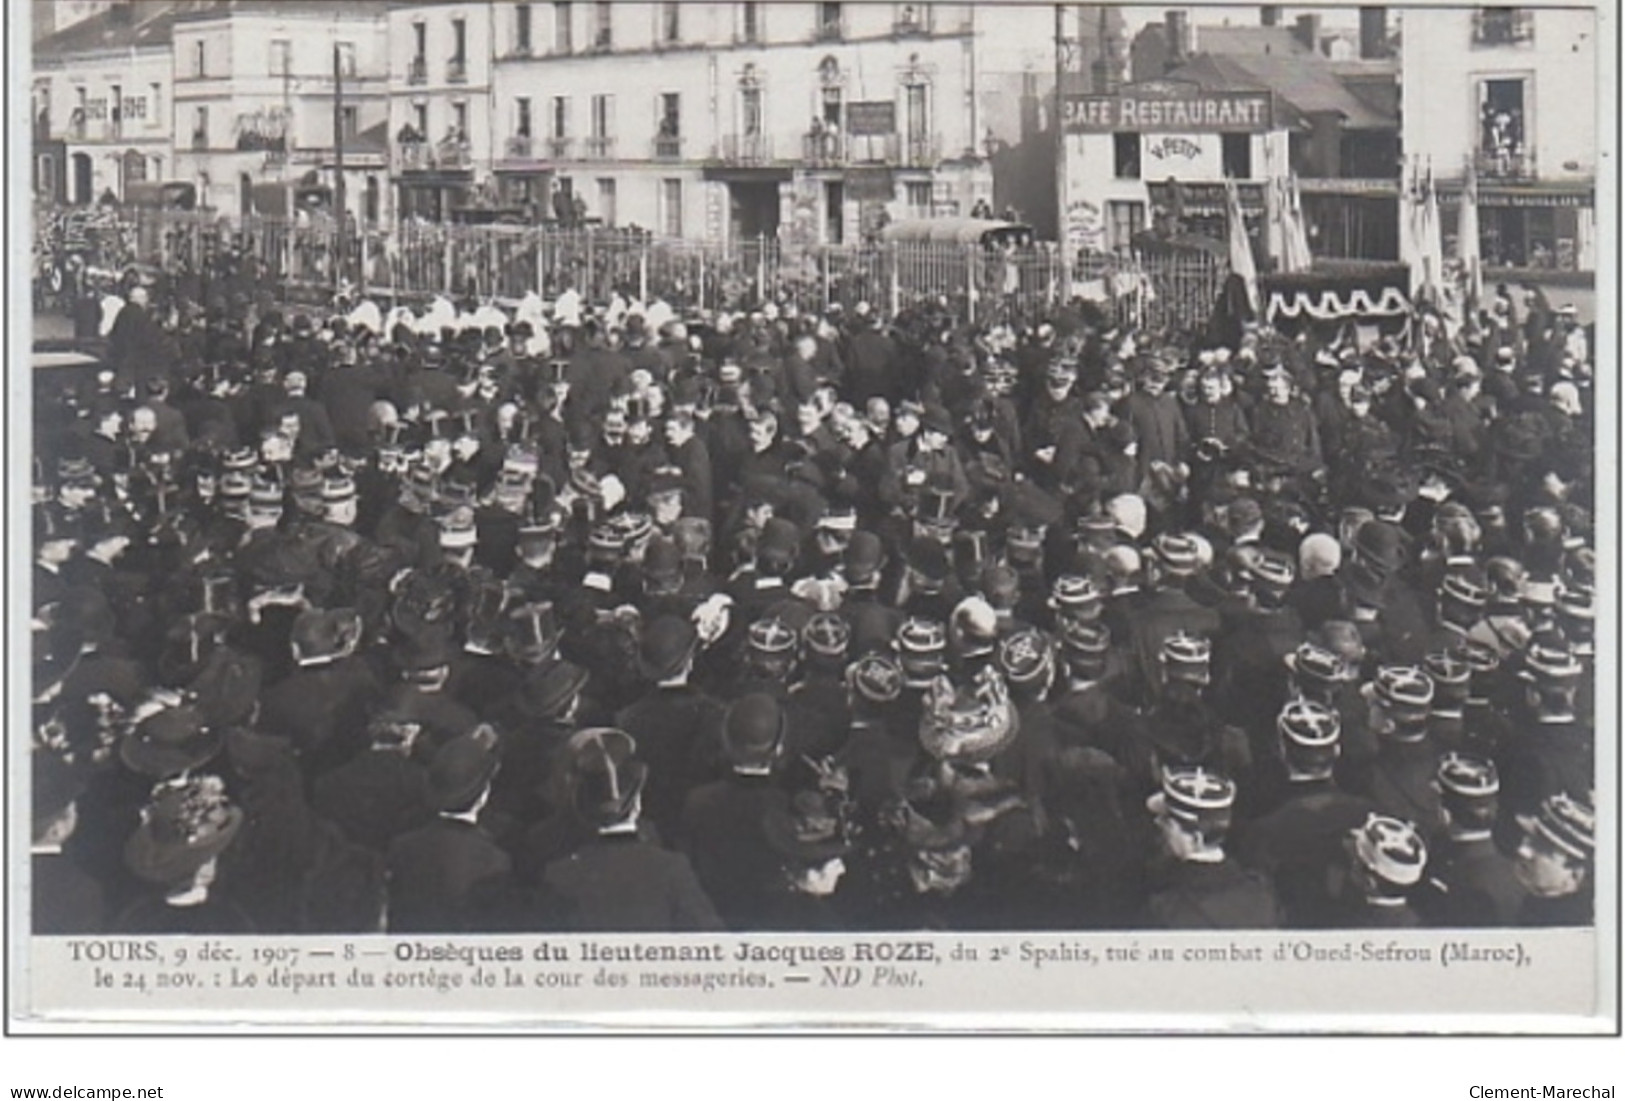 TOURS : série complète de 12 cartes postales - obsèques du lieutenant Jacques ROZE (militaire du 2ème Spahis tué au comb